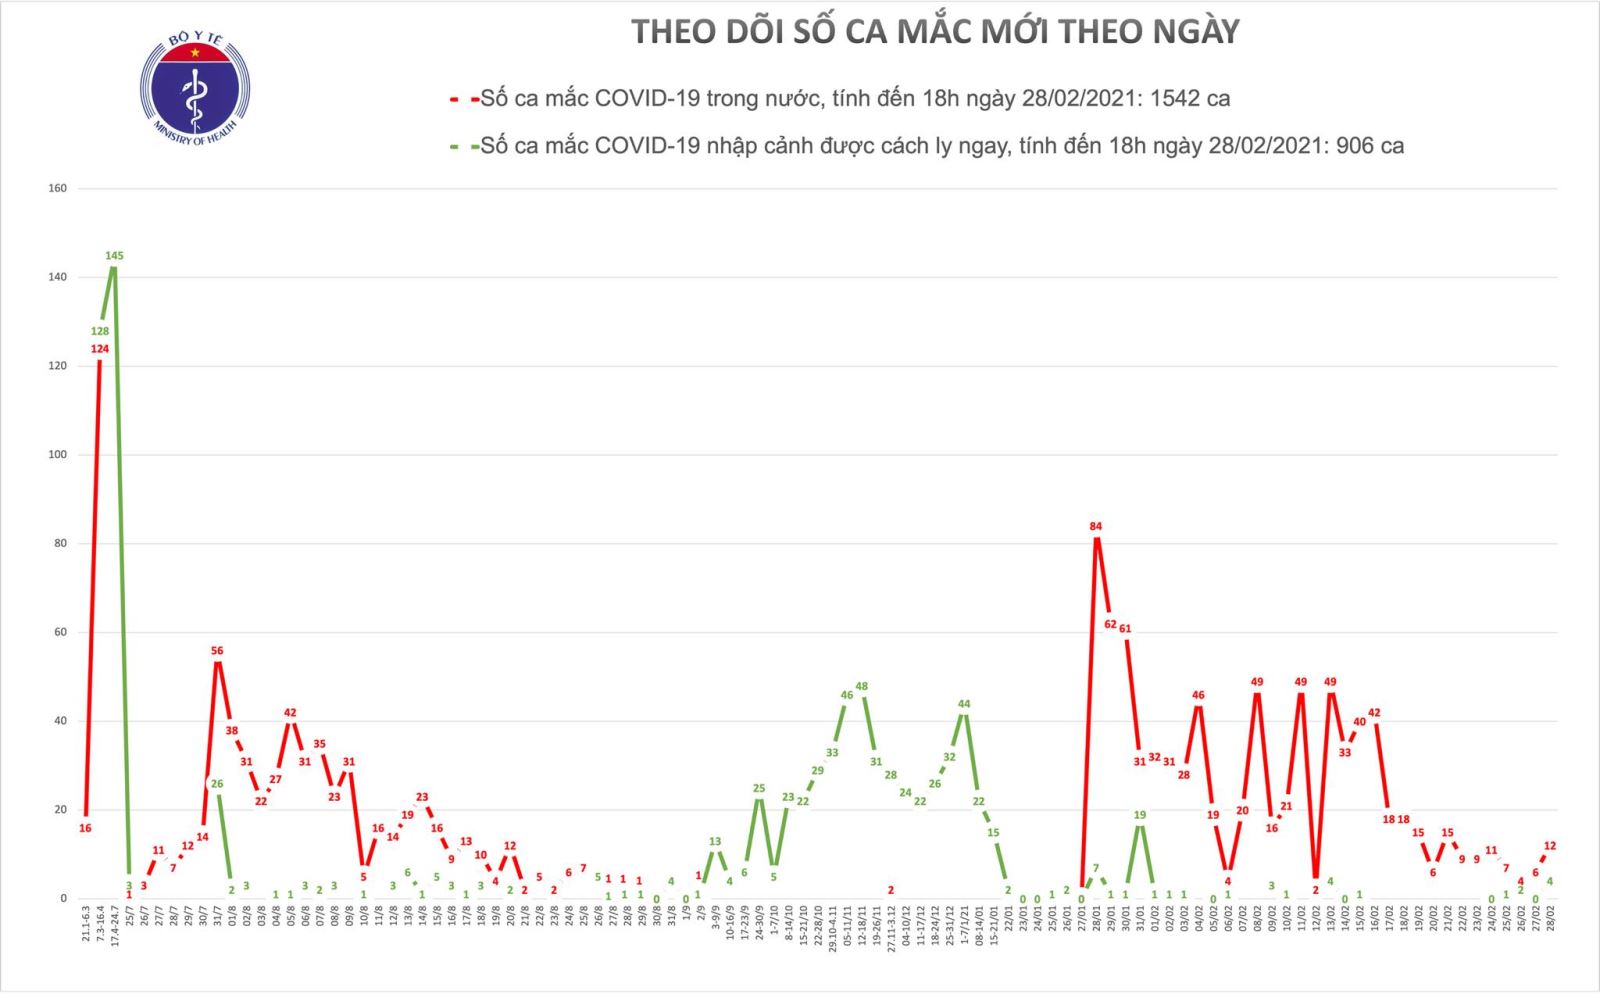 Chiều 28/2 có thêm 16 ca mắc mới COVID-19, trong đó 4 ca nhập cảnh tại Tây Ninh và Đồng Tháp